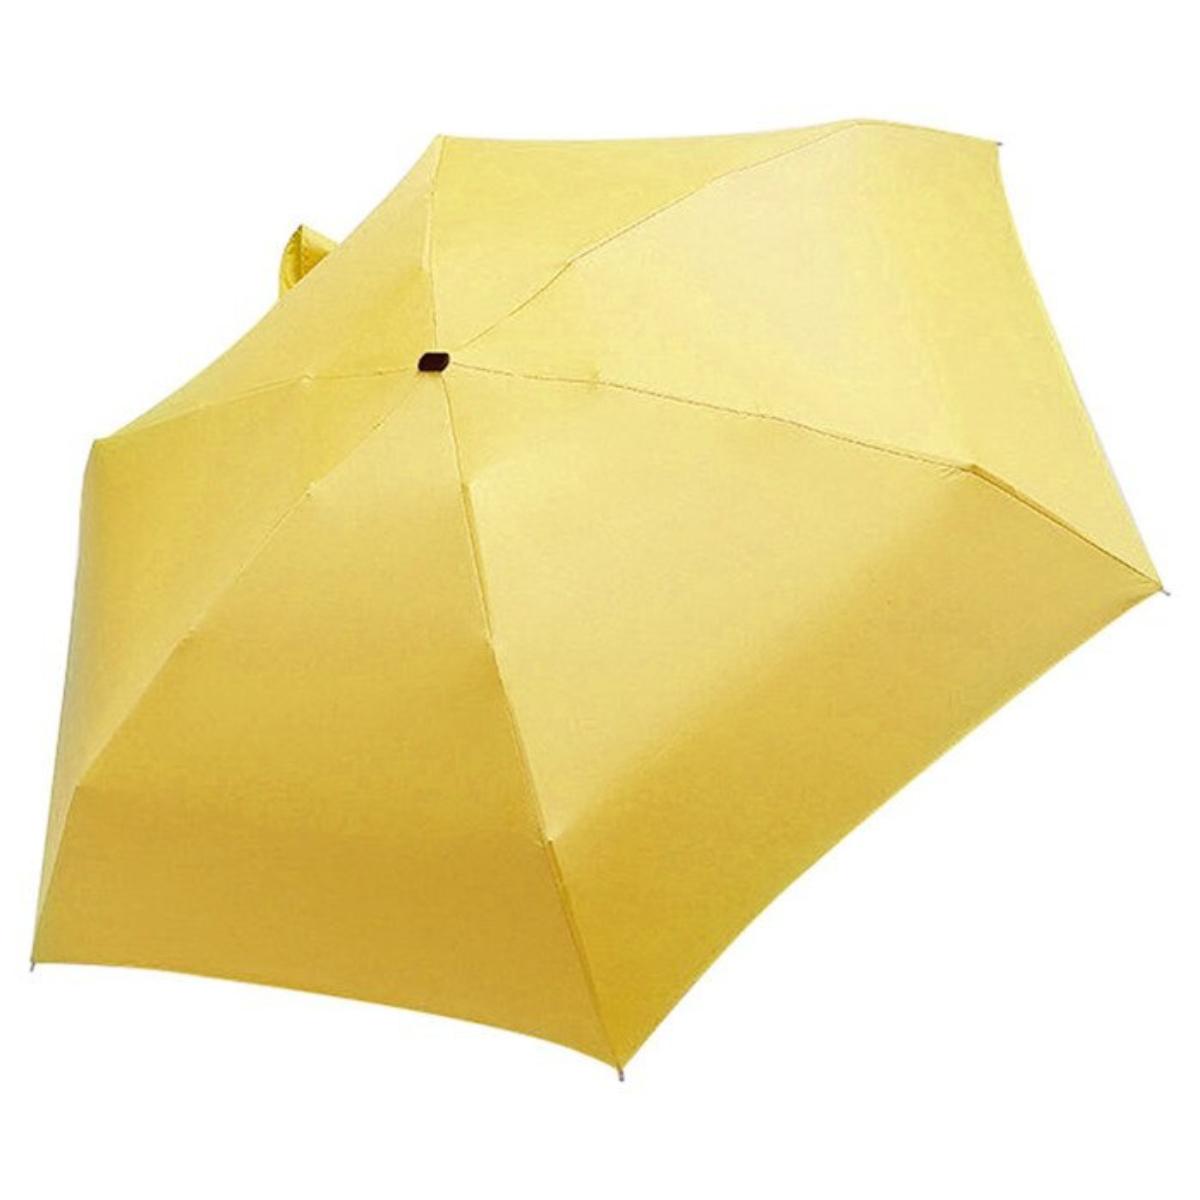 Paraplu - Able & Borret